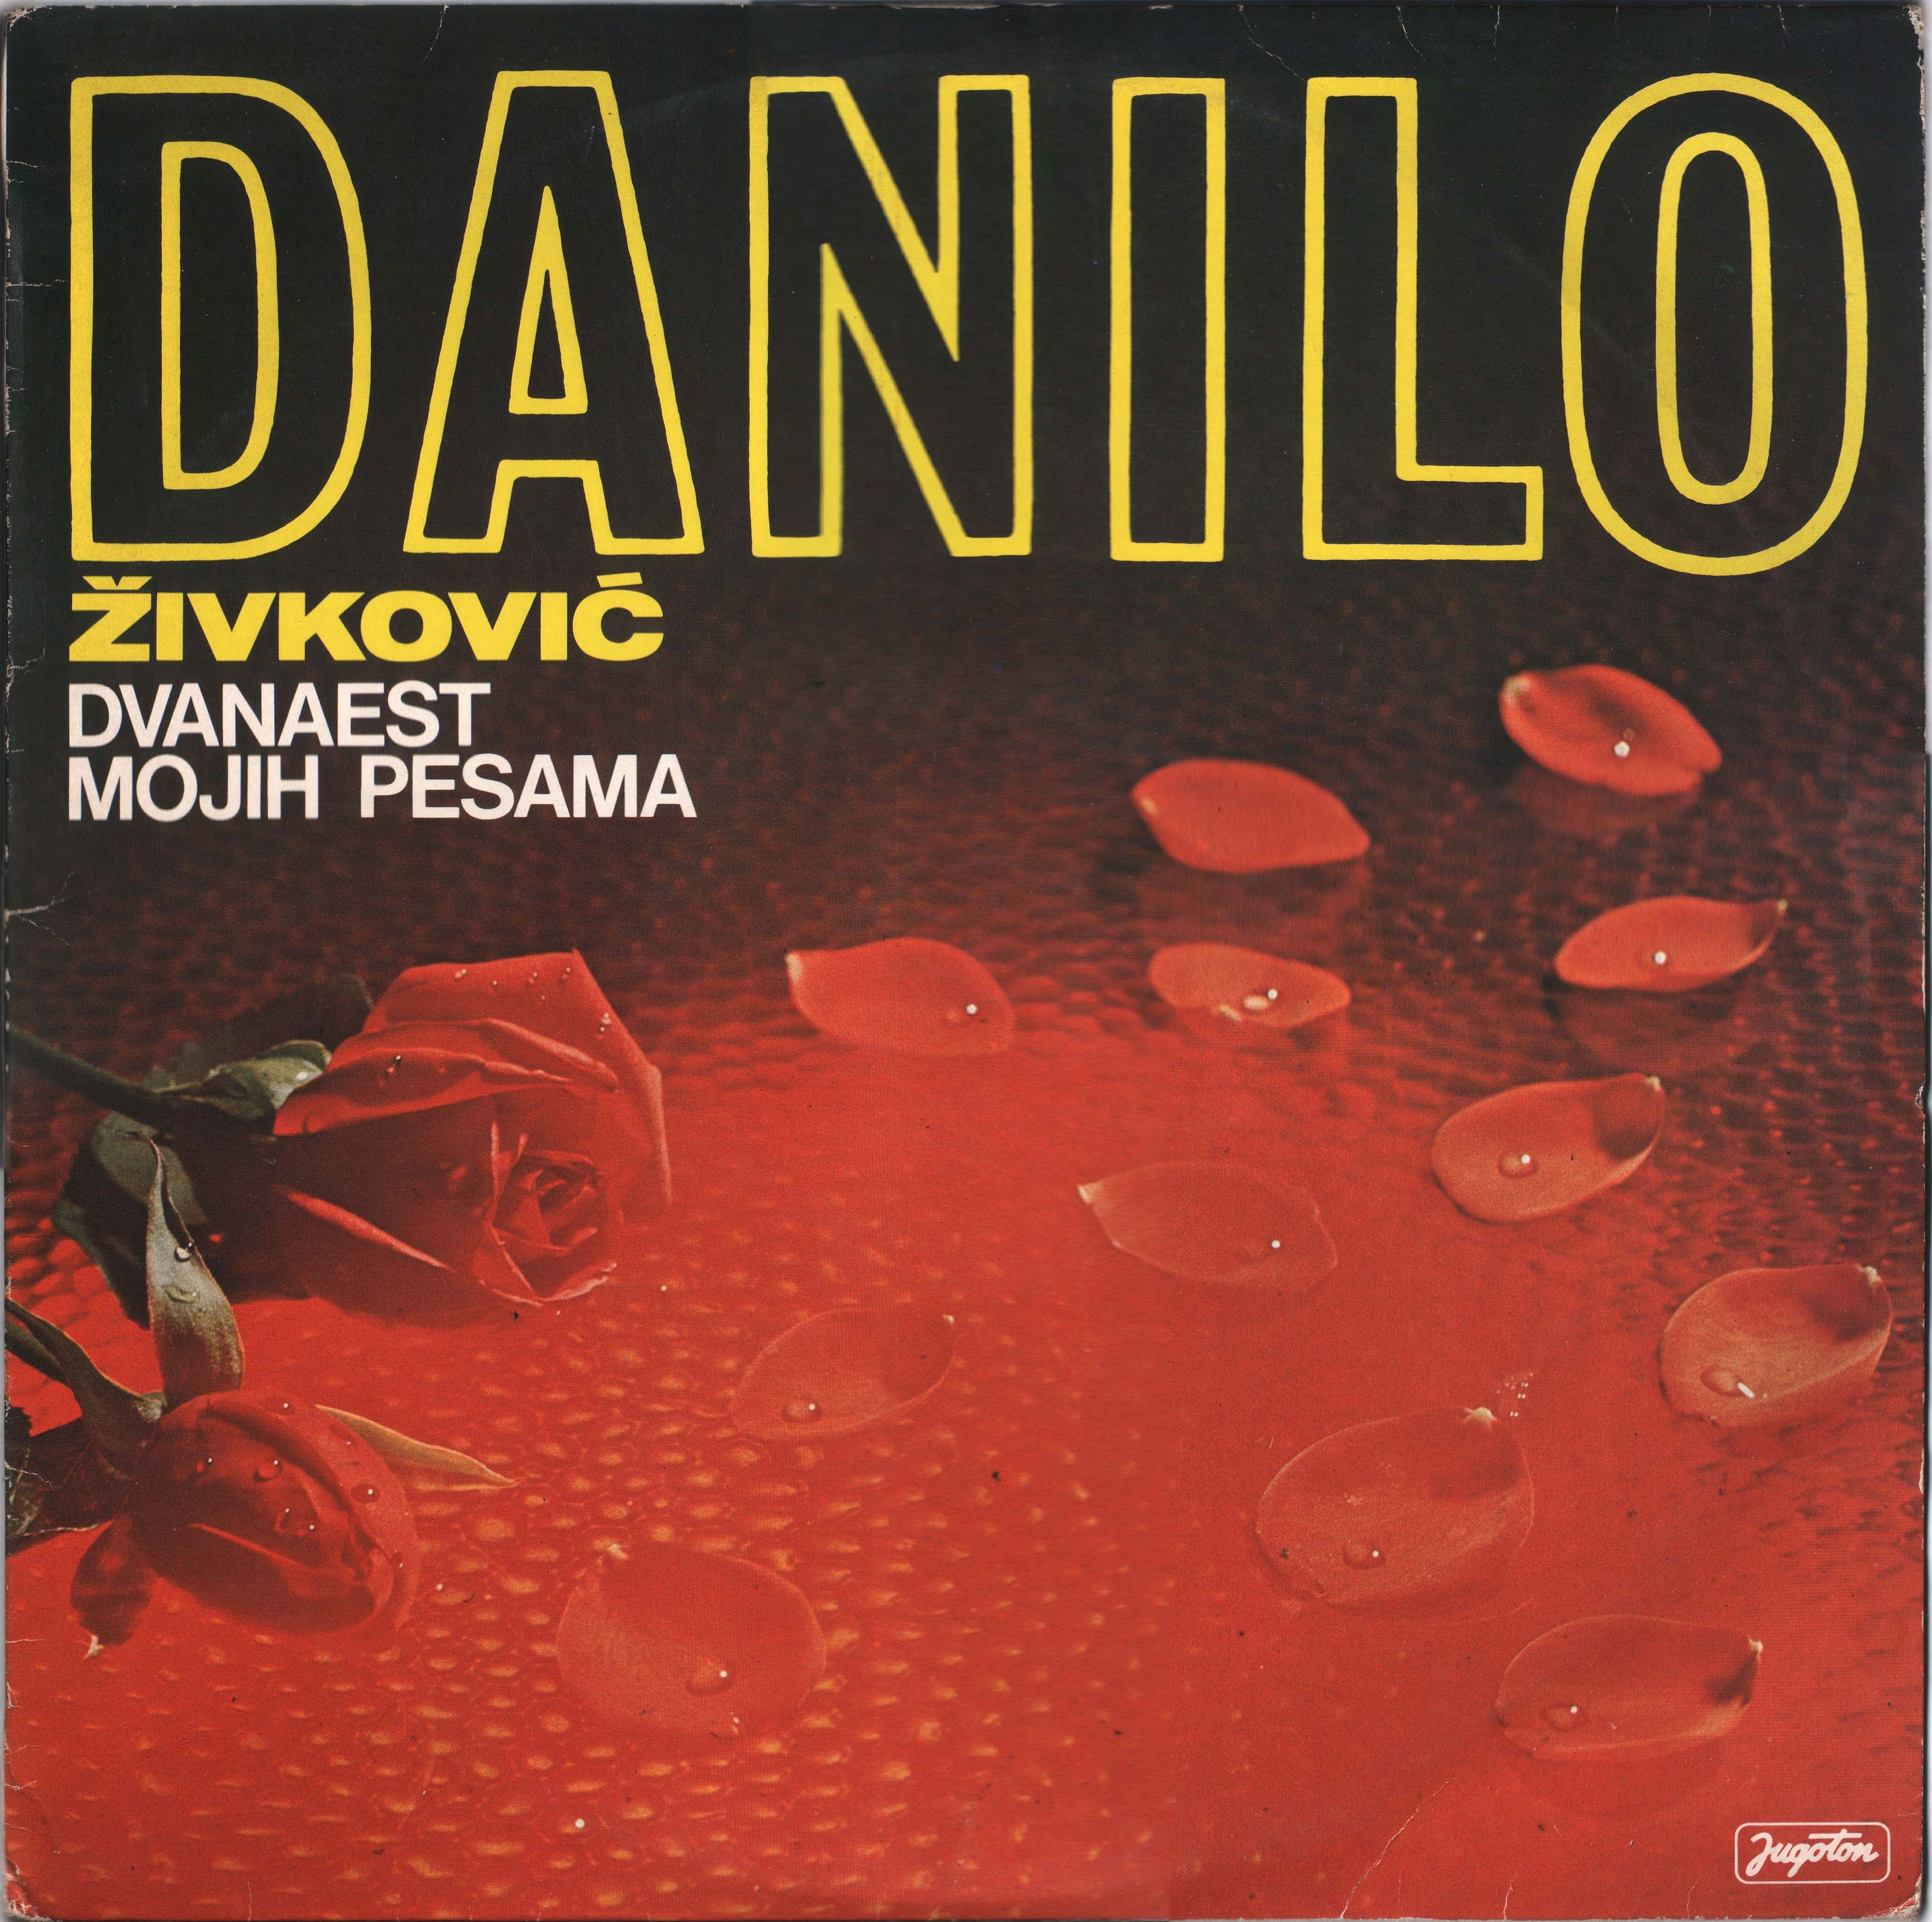 Danilo Zivkovic 1979 P